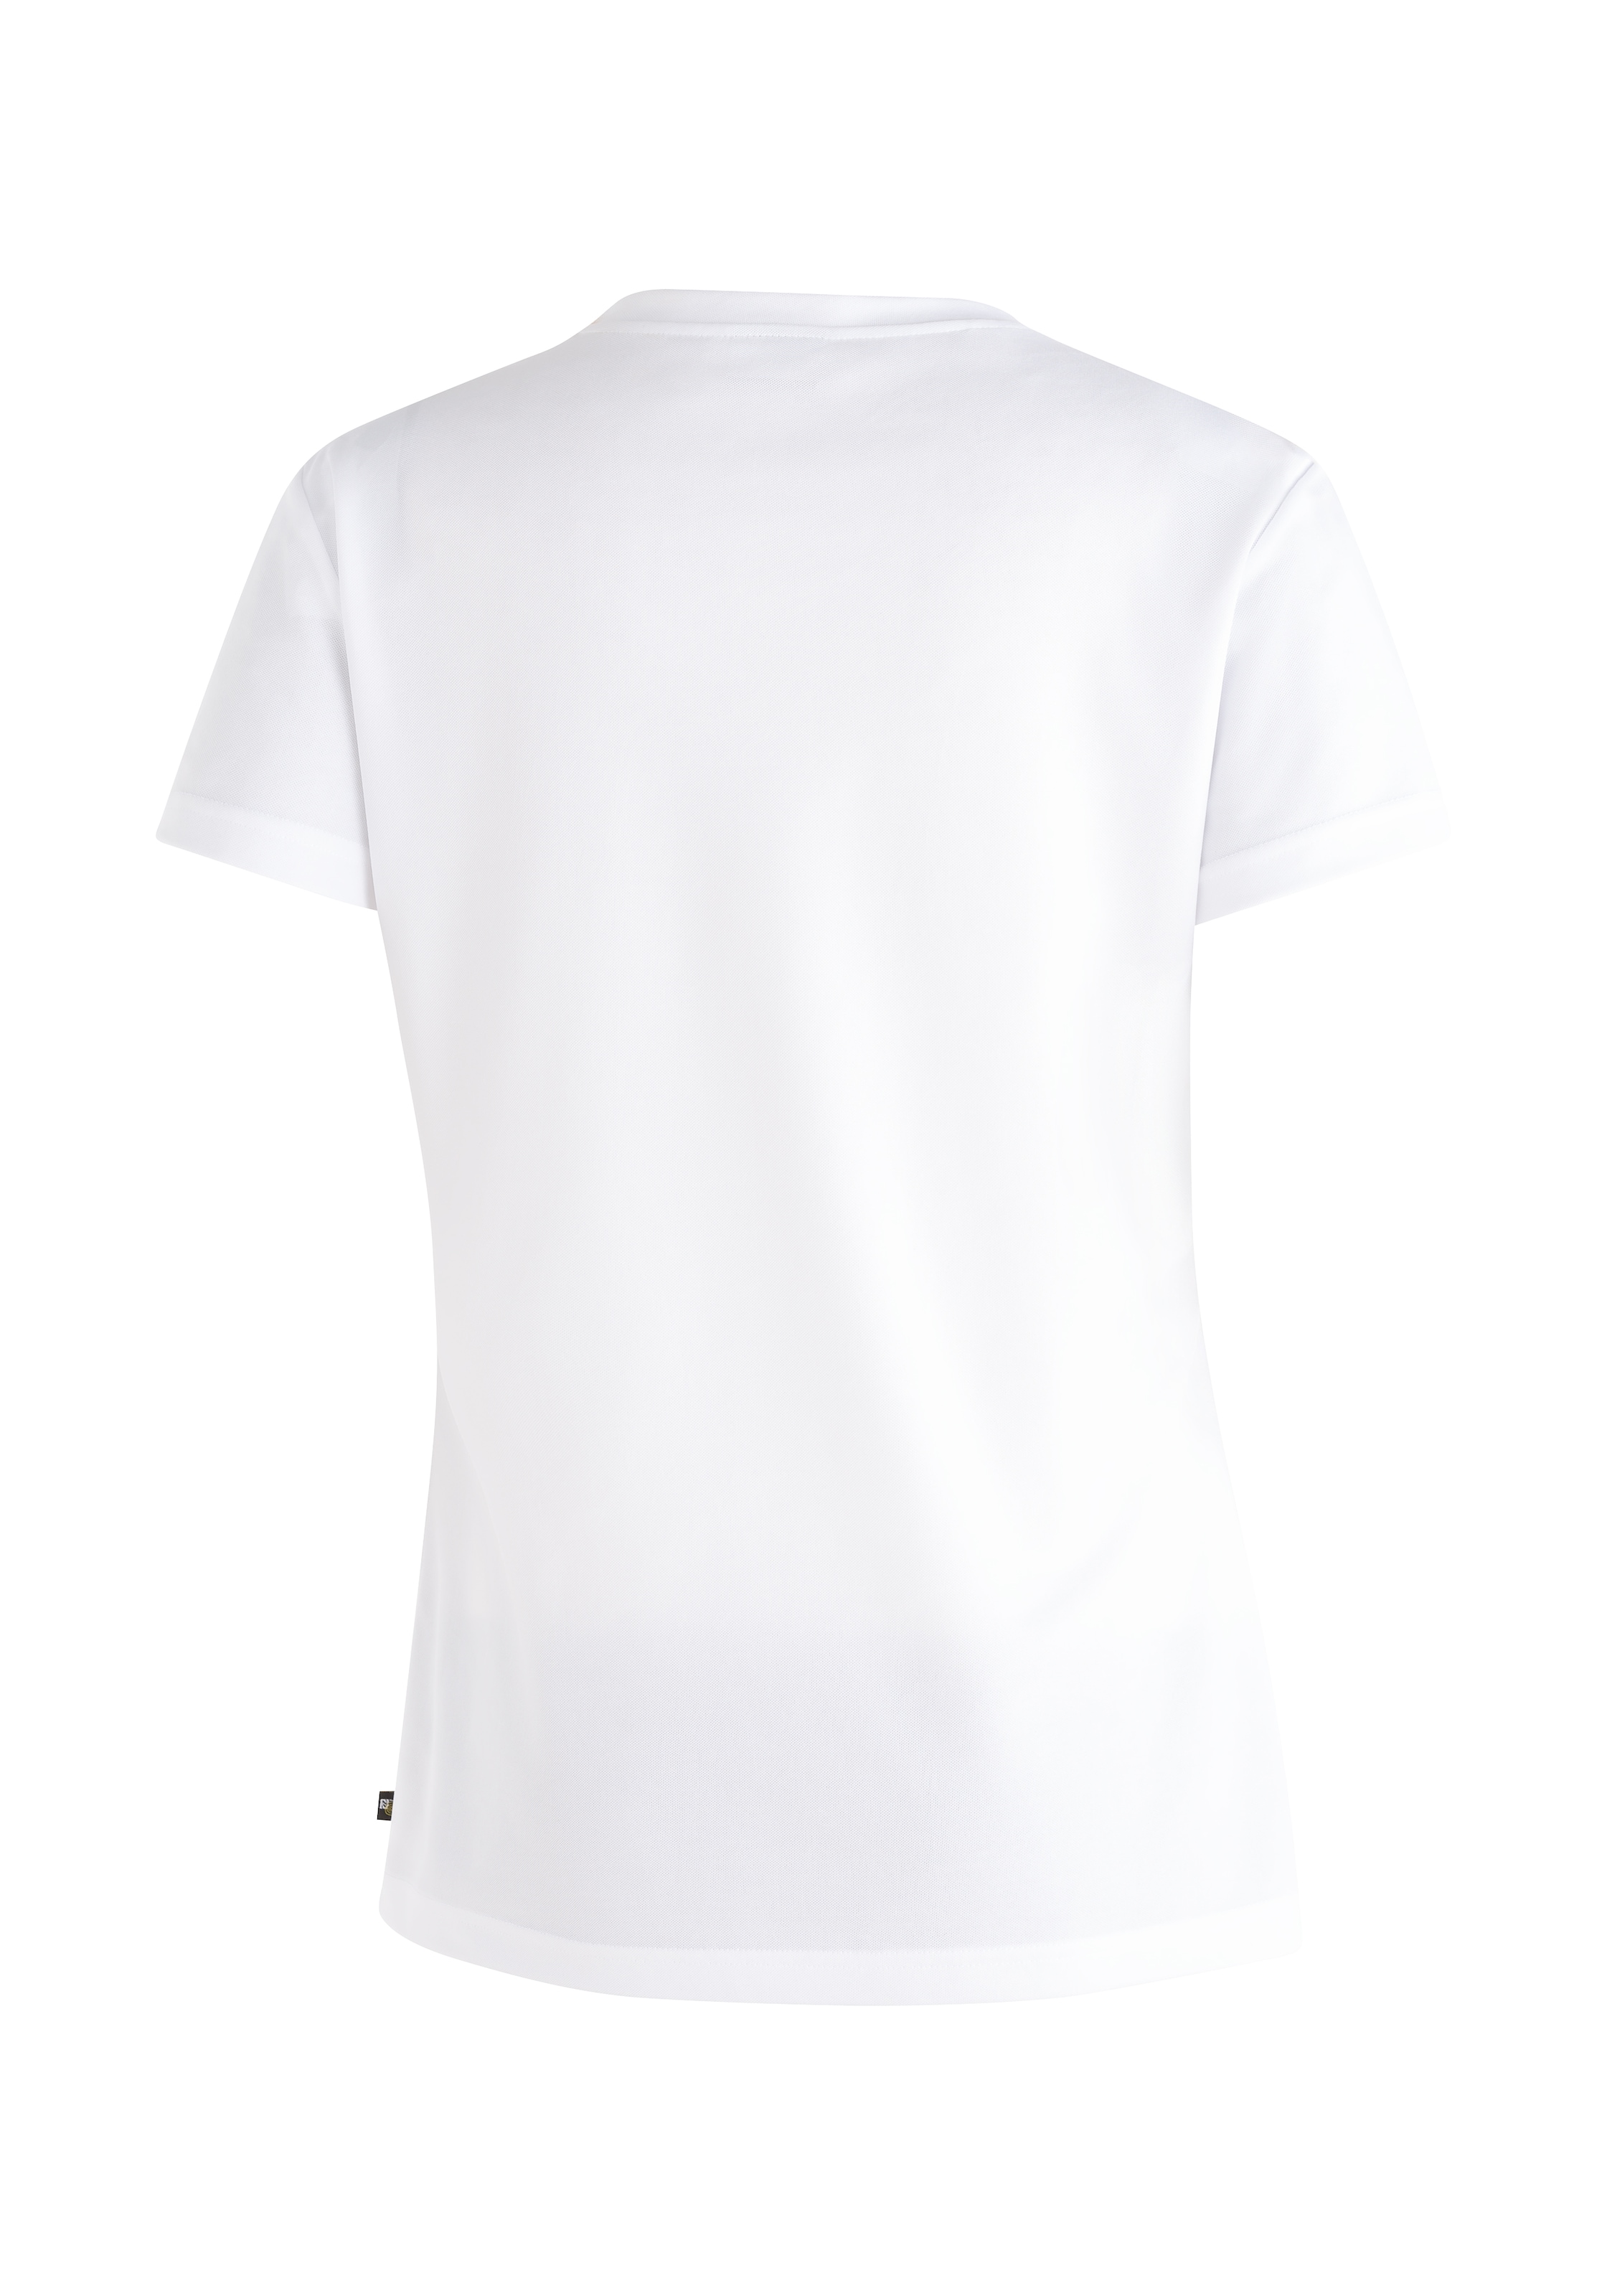 Maier Sports T-Shirt "Tilia Pique W", Damen Funktionsshirt, Freizeitshirt mit Aufdruck